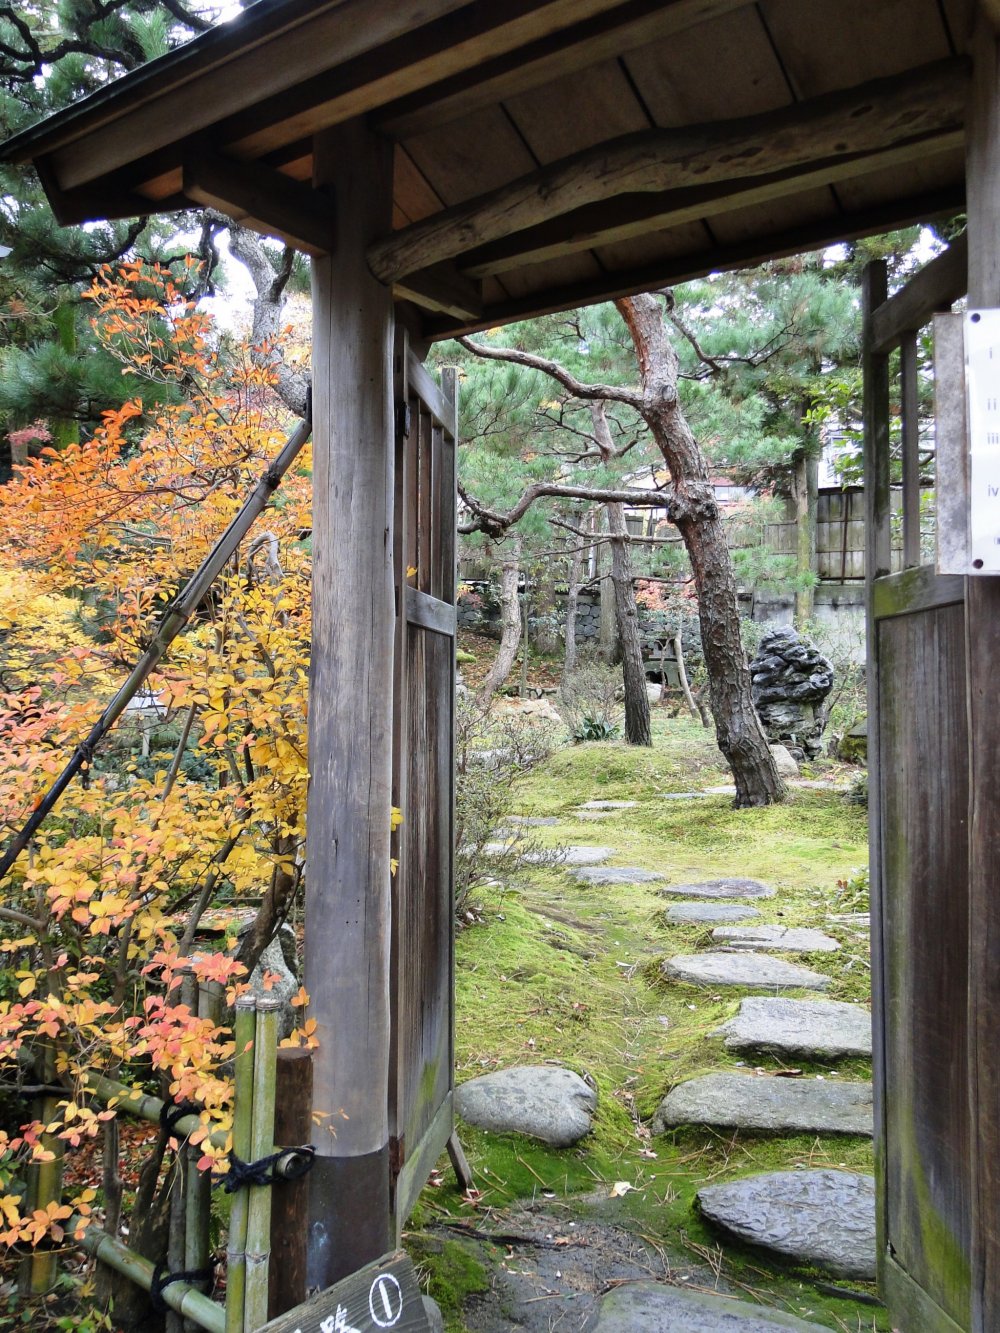 The entrance to Gyokusen&nbsp;Garden